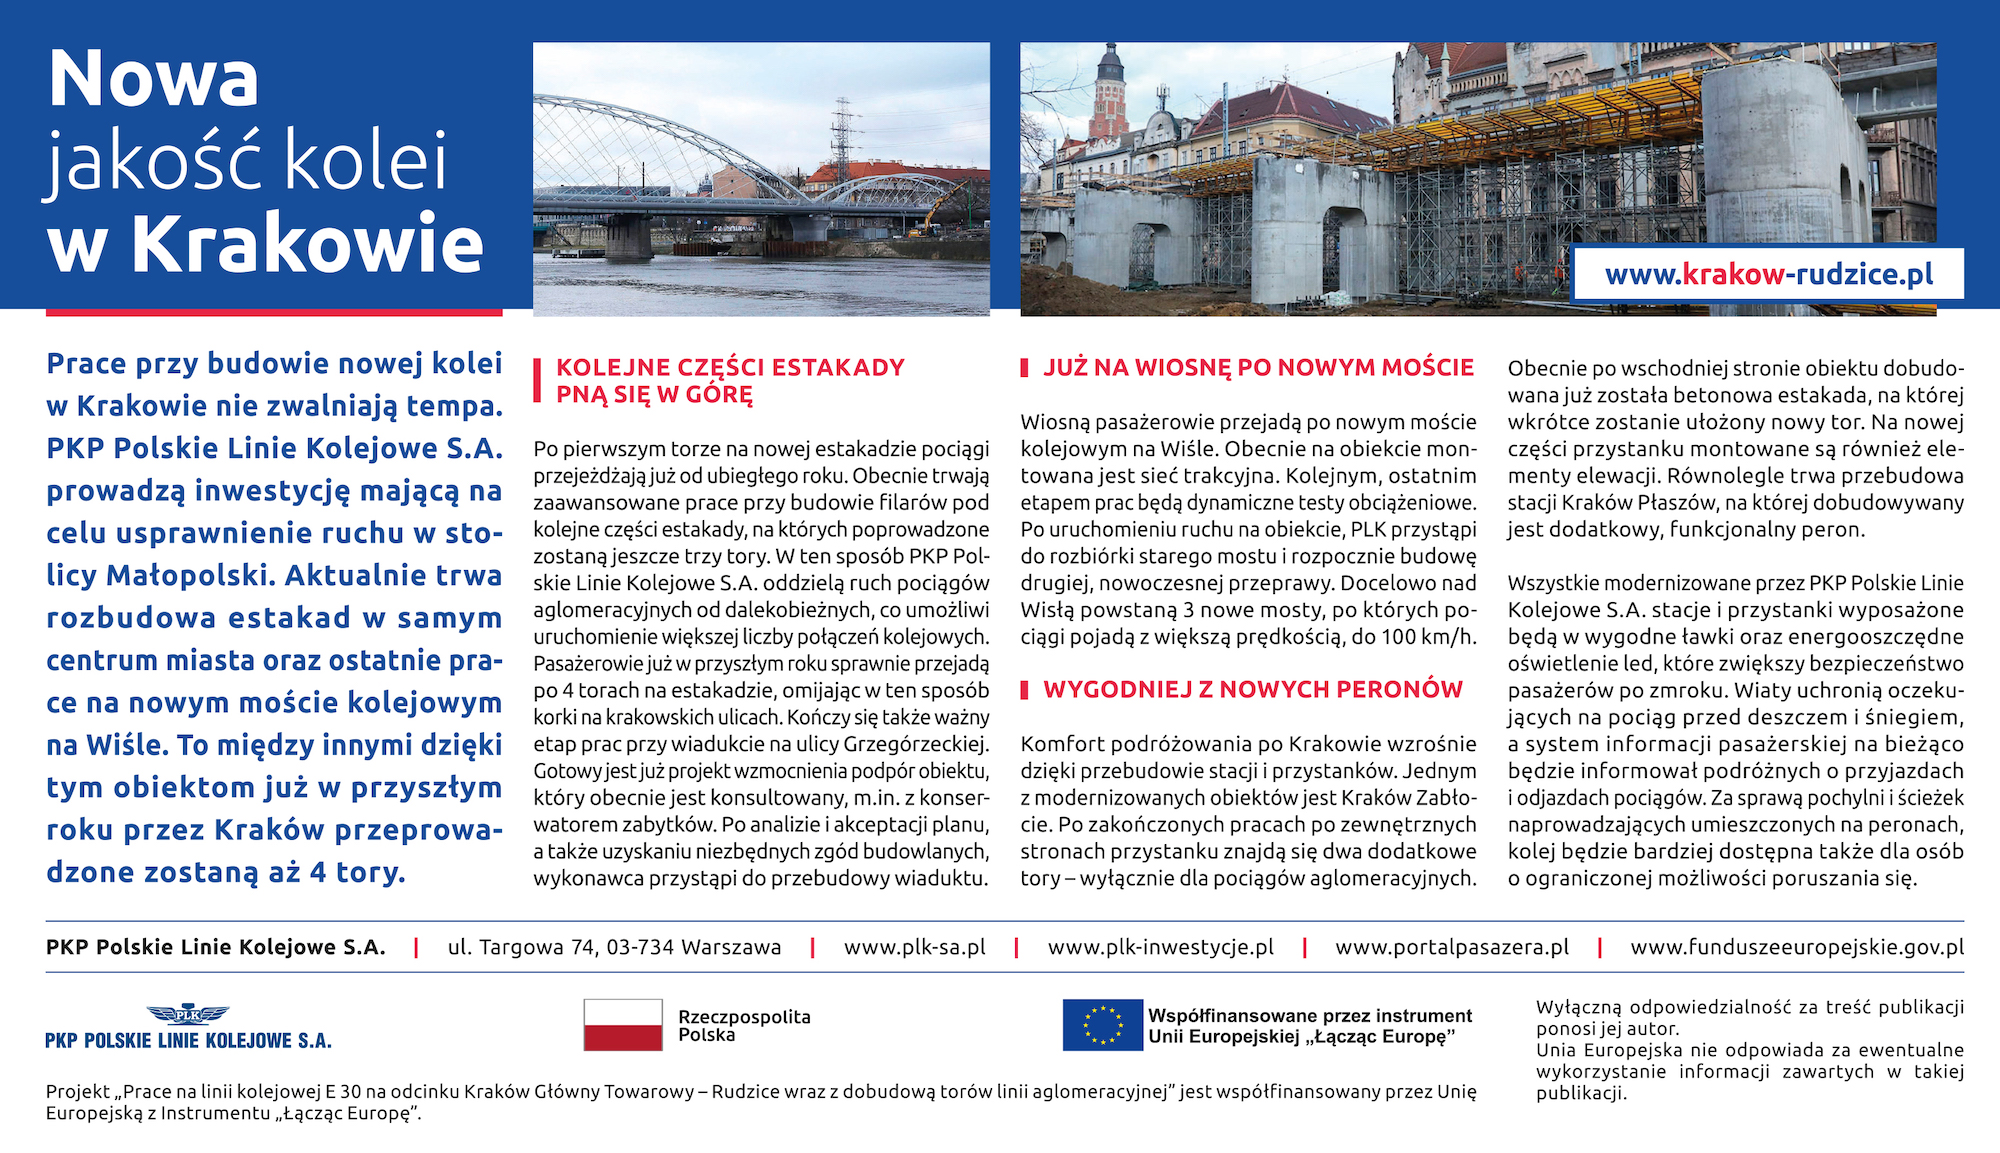 Artykuł opublikowany 28 lutego 2020 r. w Gazecie Krakowskiej i Dzienniku Polskim. Zawiera zdjęcie budowanych estakad w centrum Krakowa i zdjęcie nowego mostu kolejowego nad Wisłą.